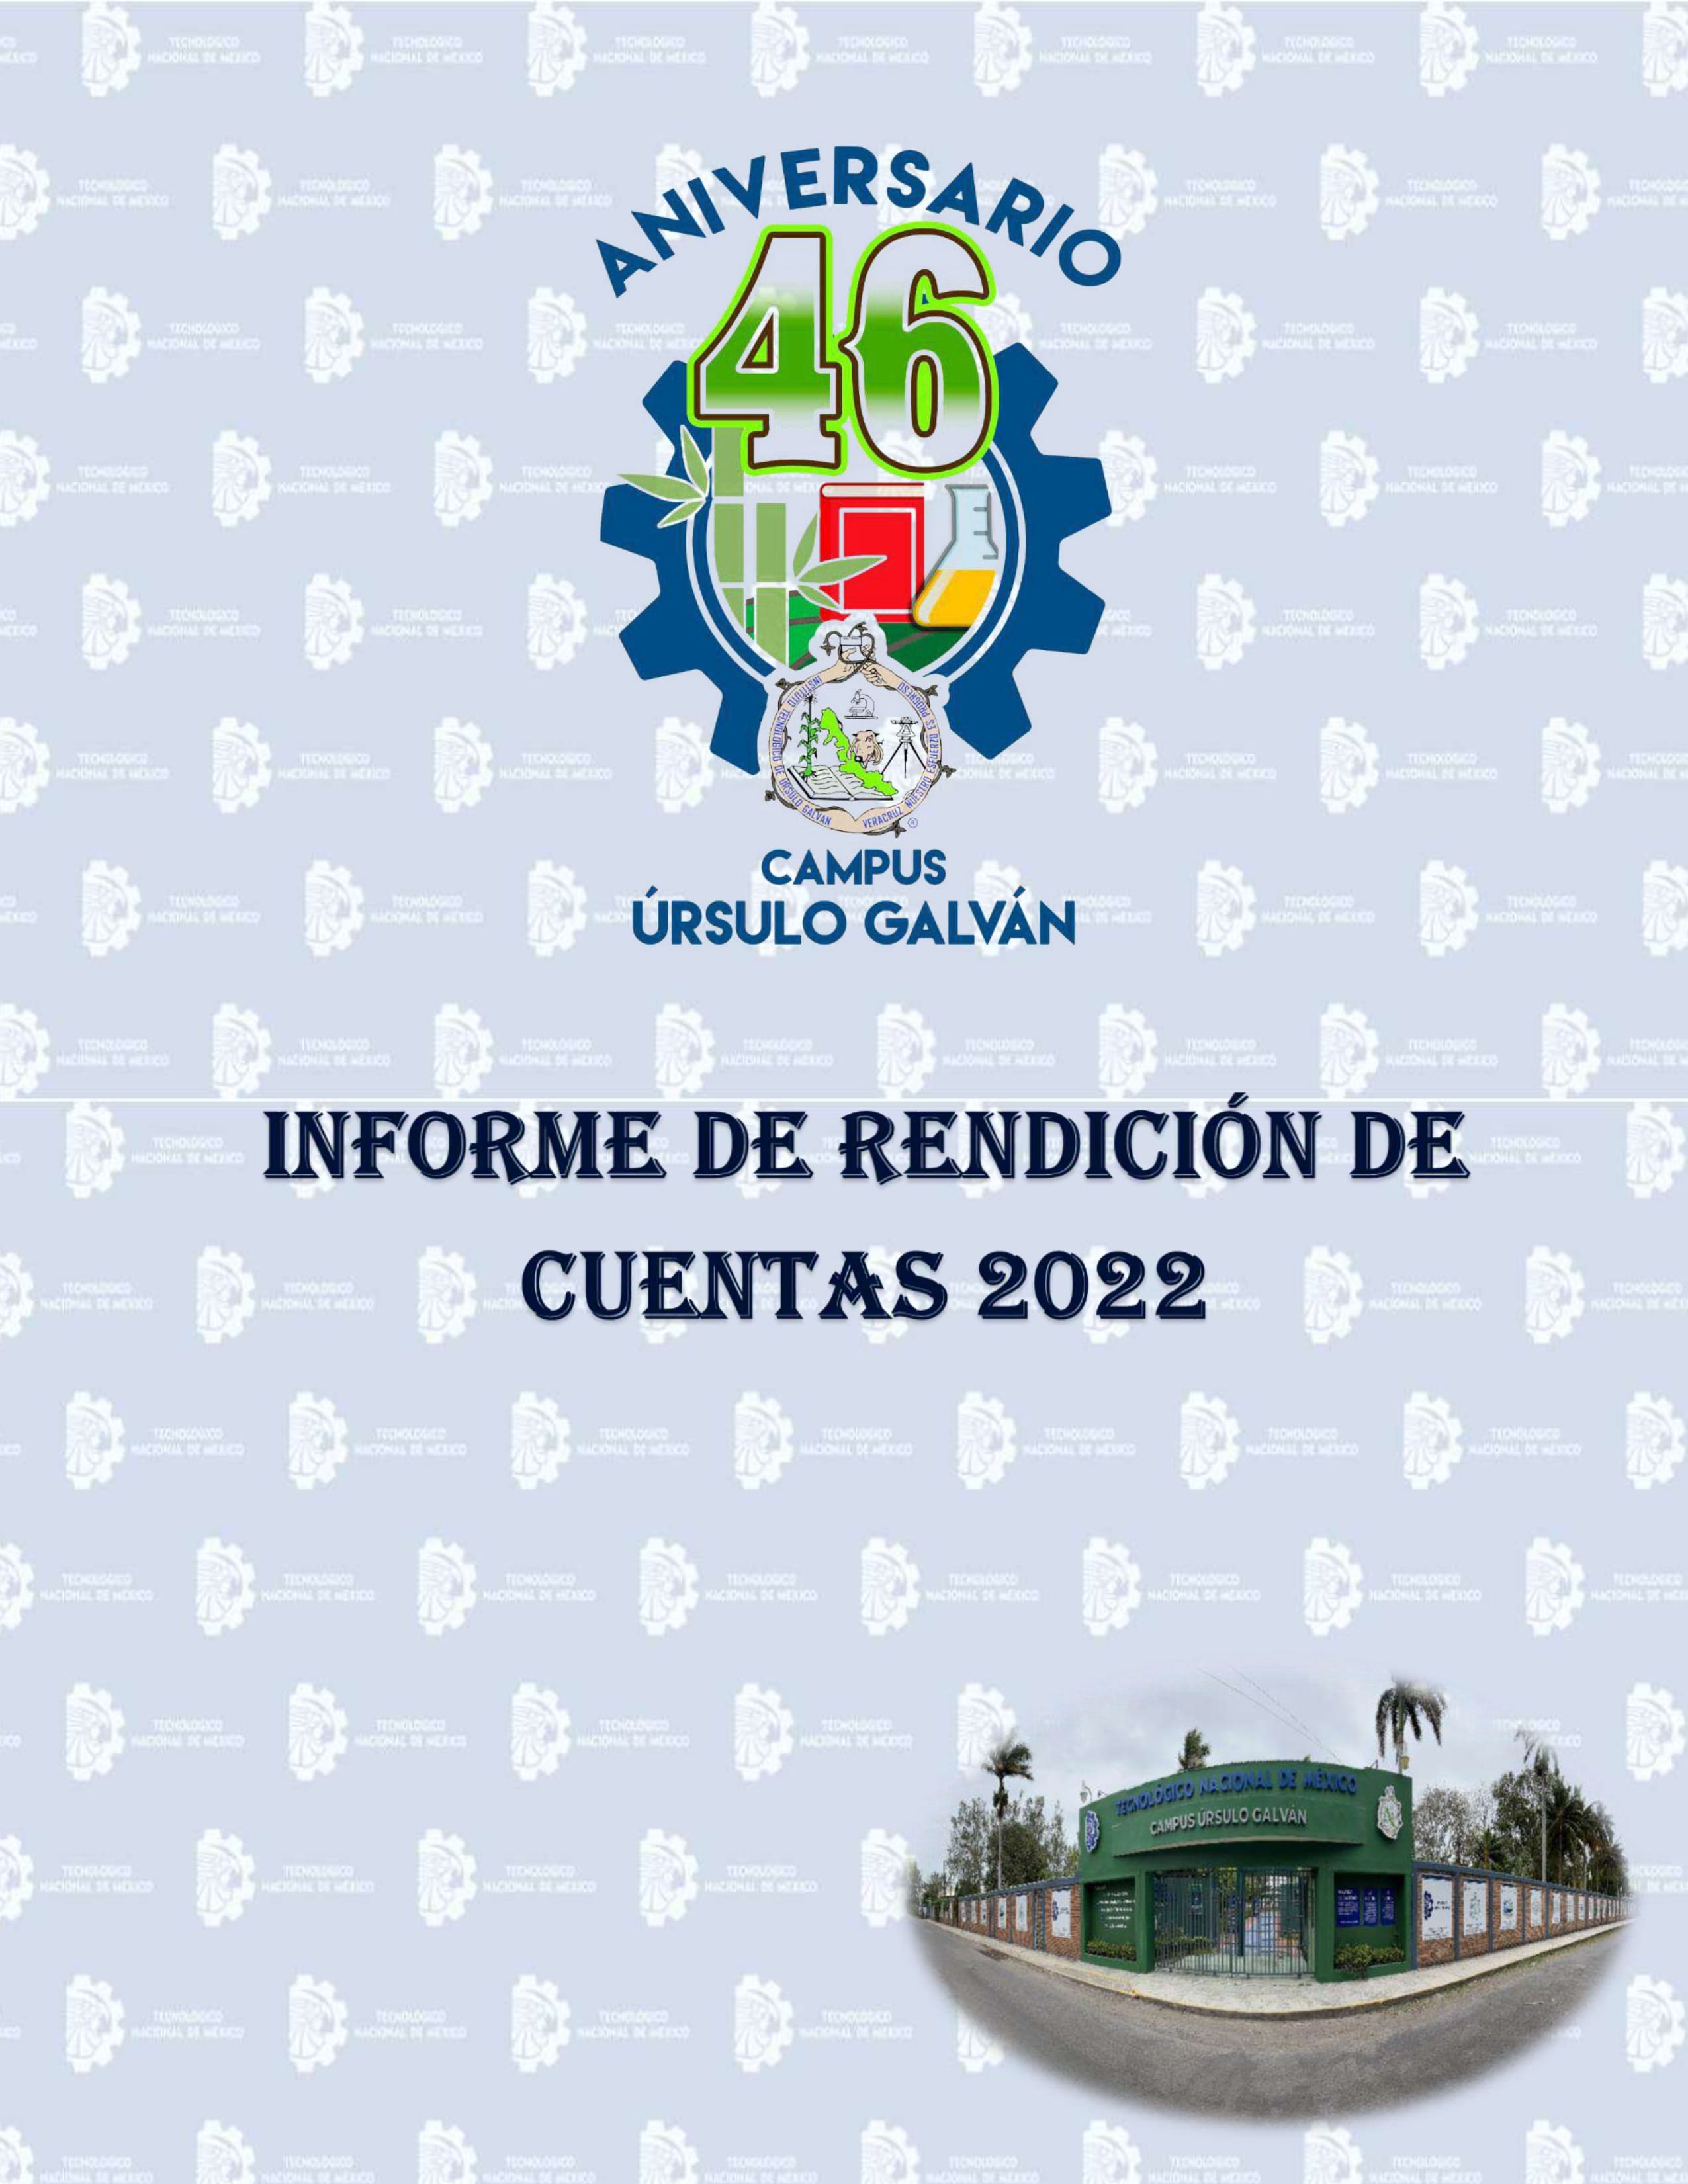 INFORME DE RENDICIÓN DE CUENTAS 2022